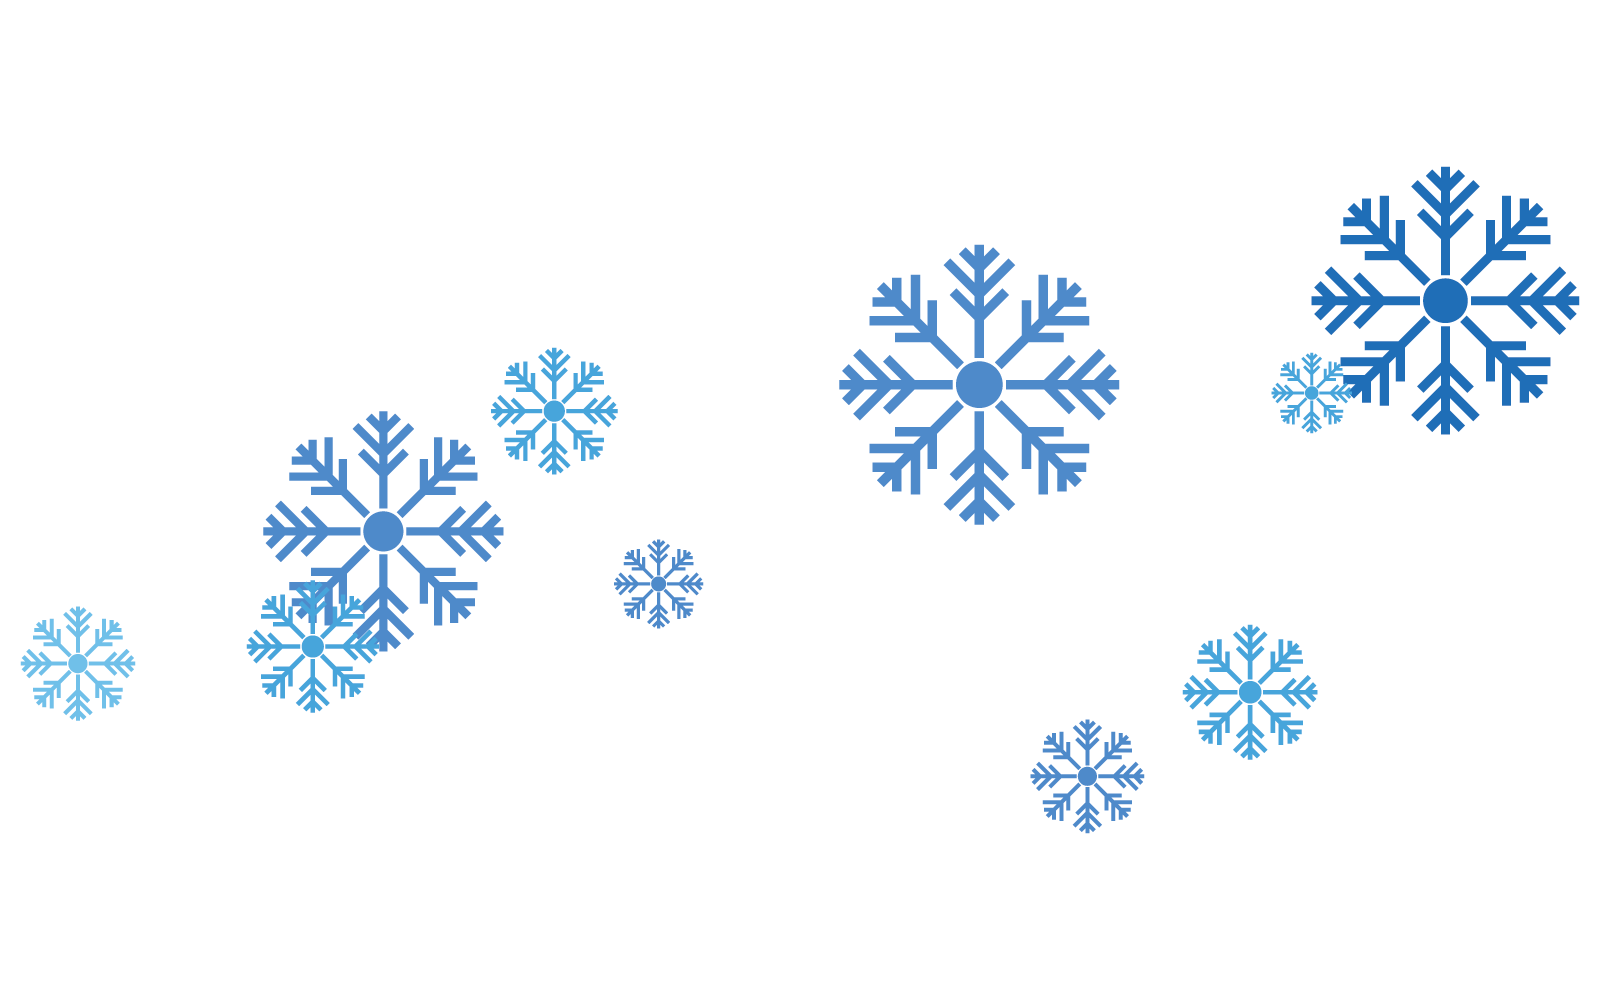 Schneeflocken-Hintergrund-Schneefall-Illustrations-Vektor-flaches Design